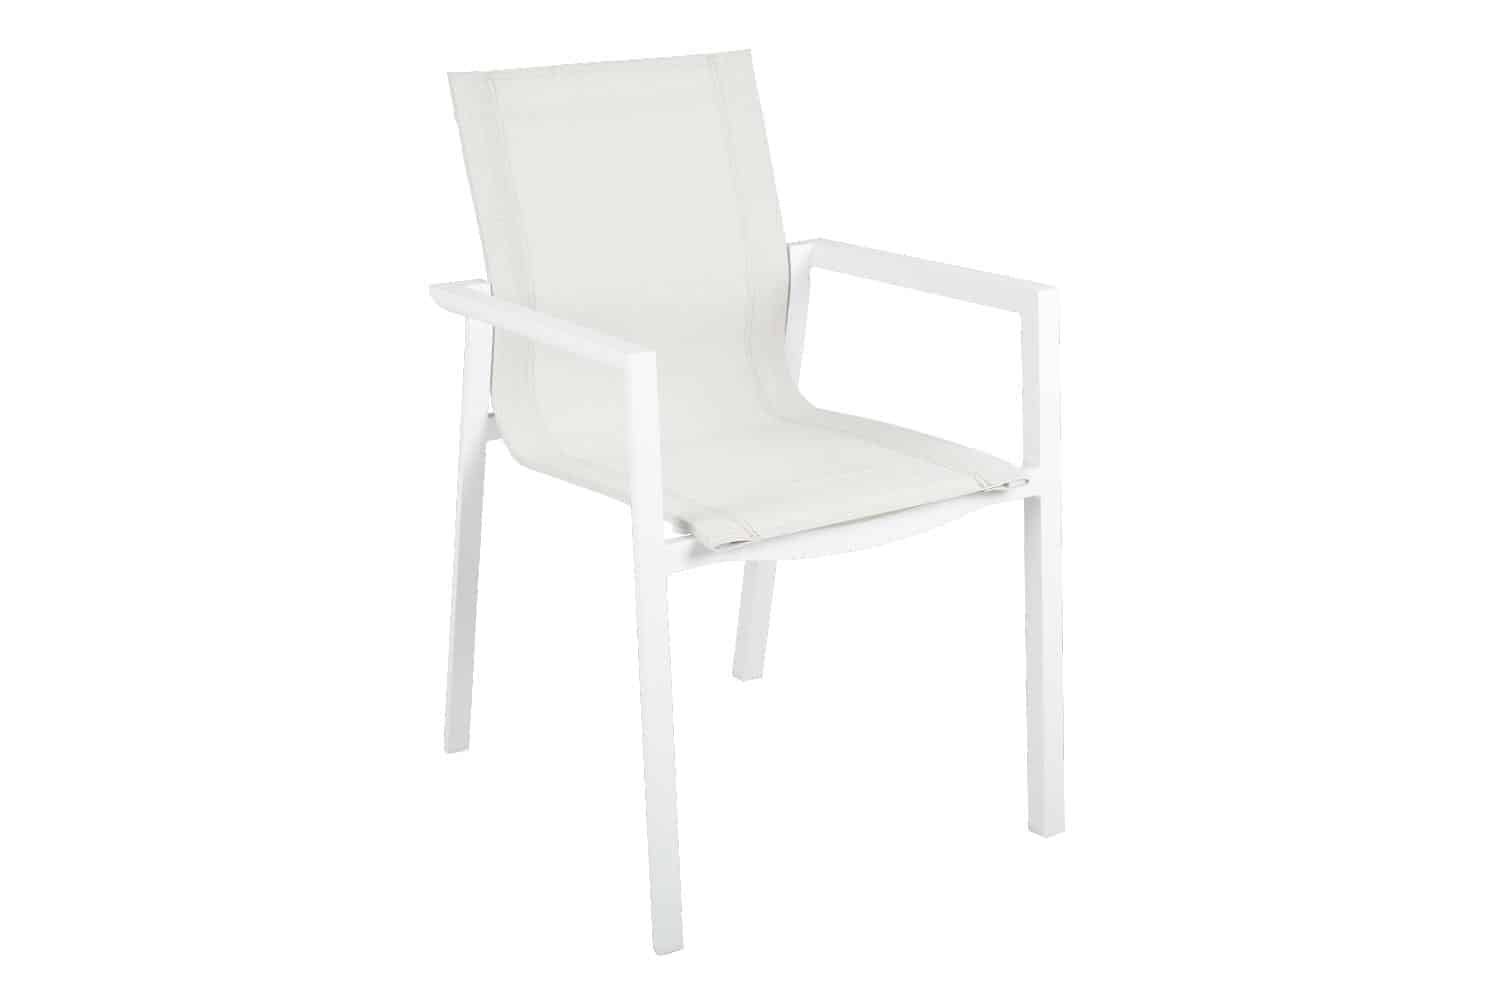 Brafab Delia Karmstol vit/off white är en stapelbar matstol i vitfärgad aluminium och off white textilene.